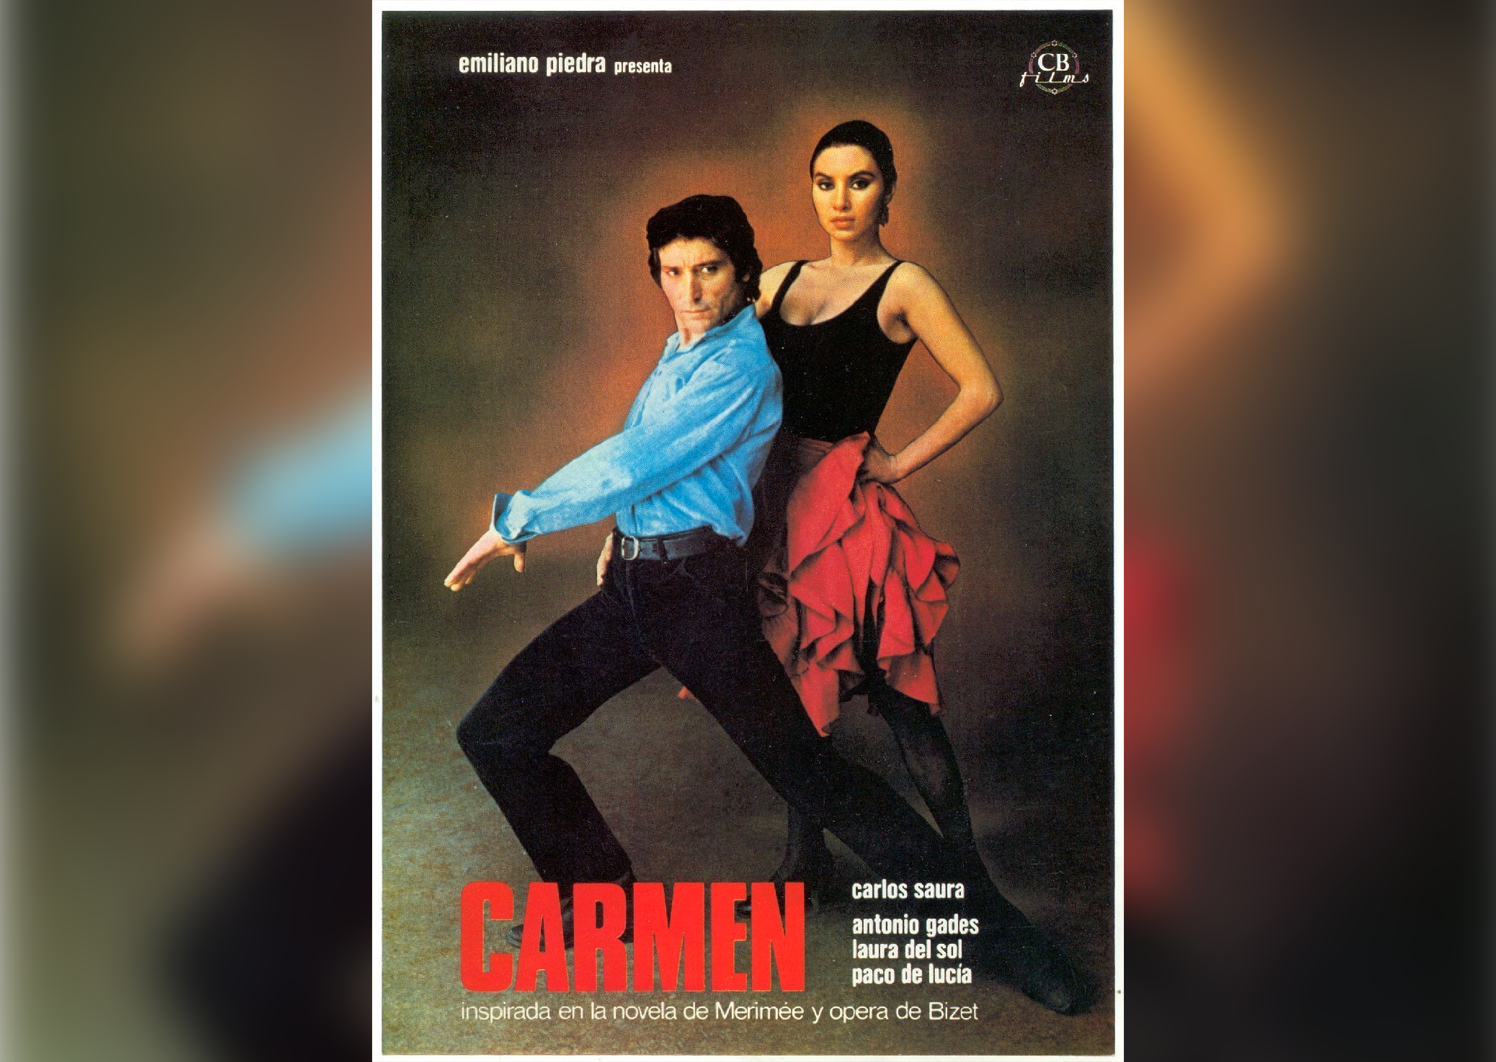 Carlos Saura’s ‘flamenco’ Carmen